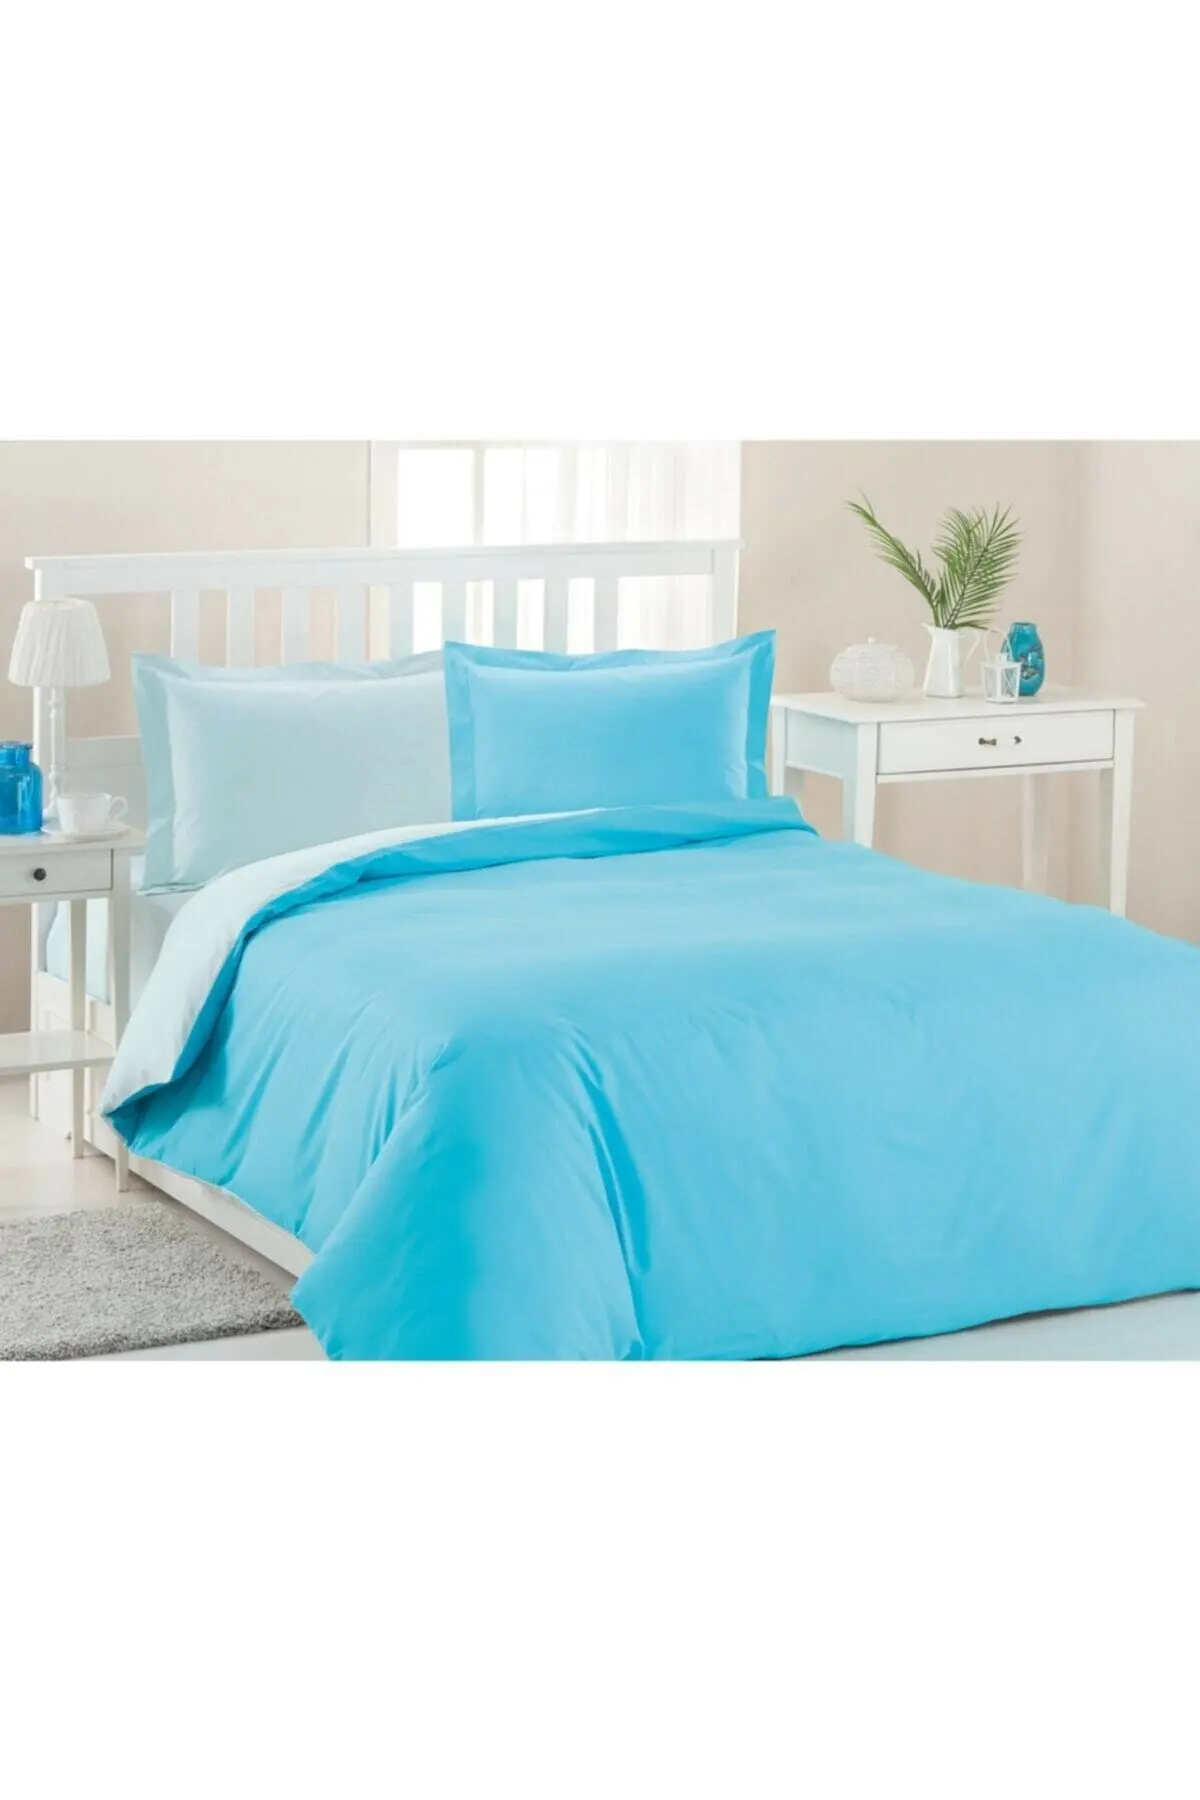 

Özdilek Colormix Double Duvet Cover Set- Mint Turquoise, 200x220 Duvet Cover, 240x260 Bed Sheet, 50x70 Pillowcase (2 Pieces)